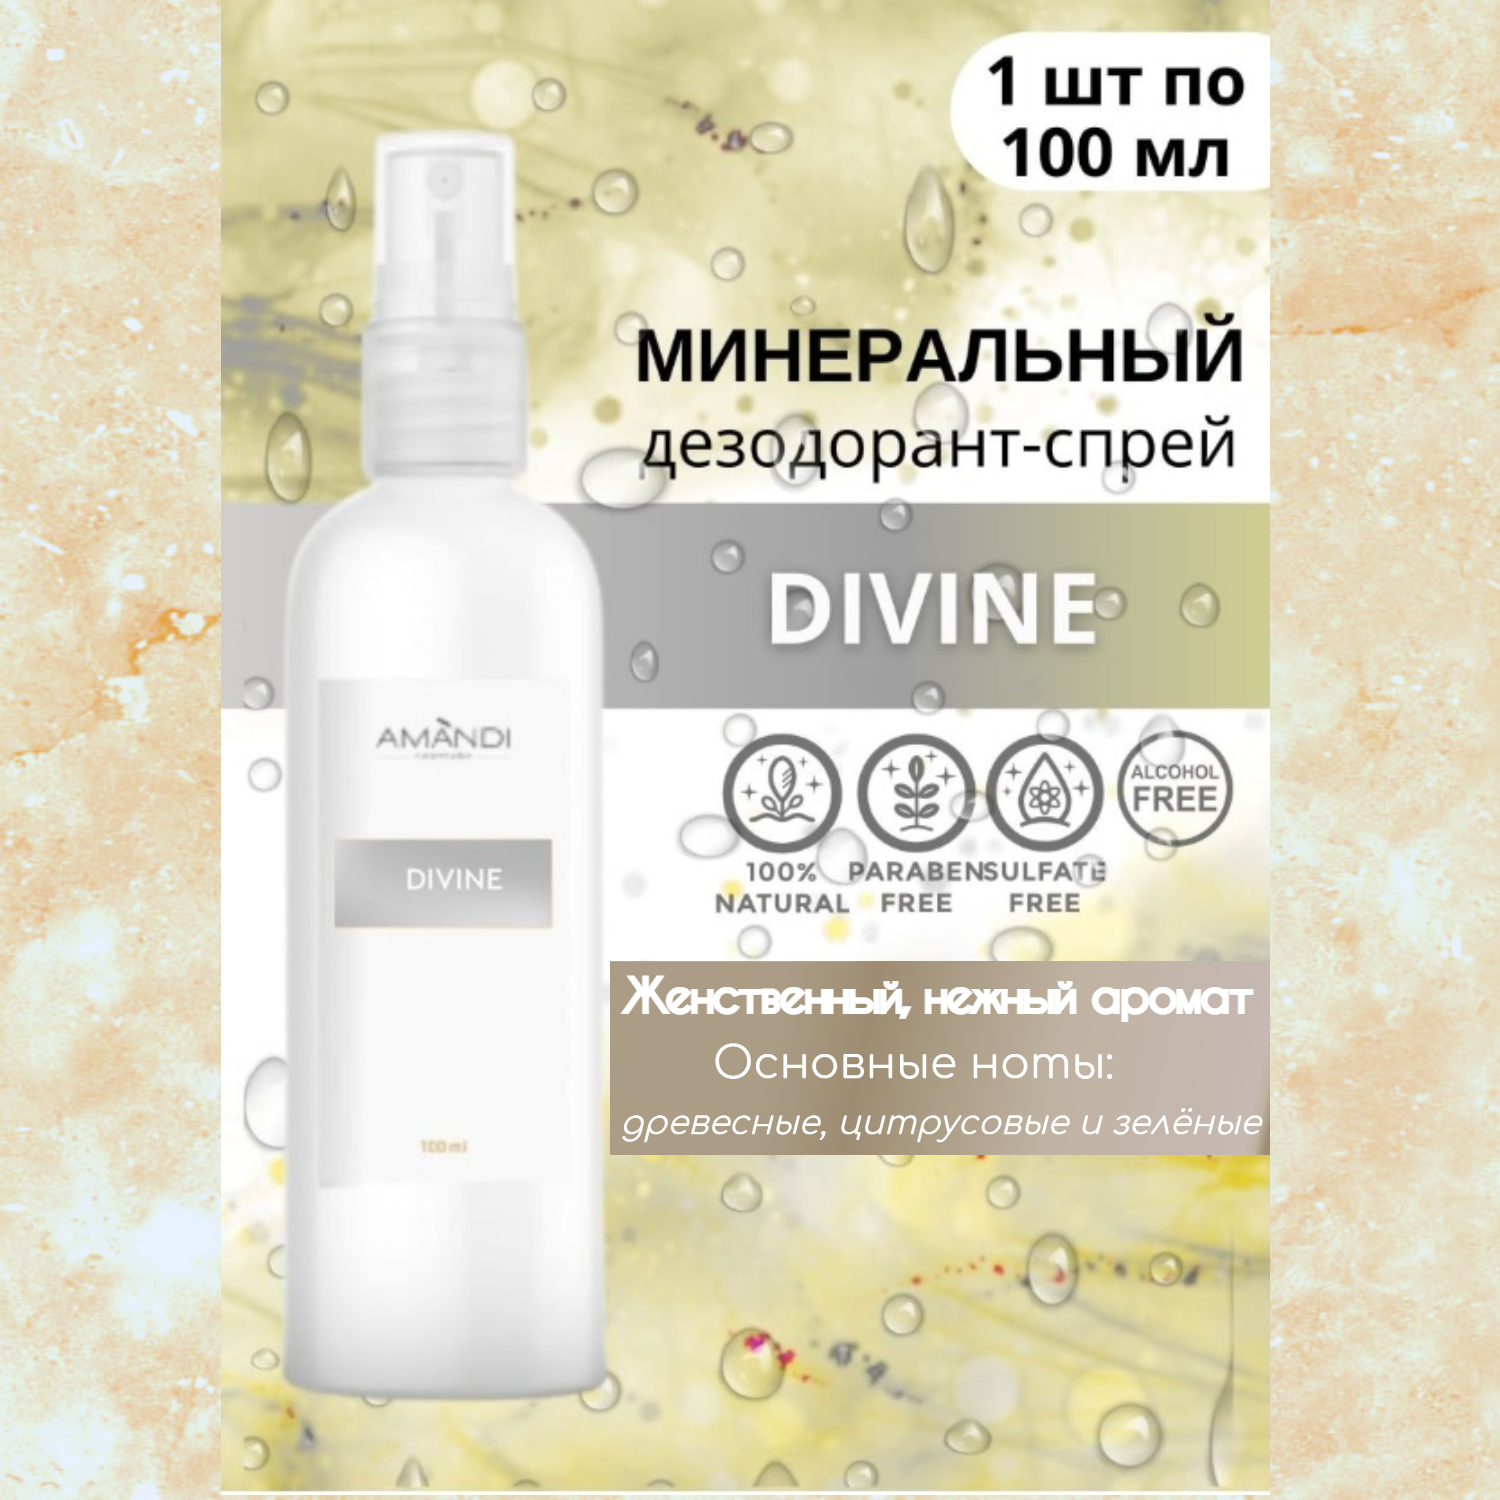 Минеральный дезодорант-спрей AMANDI DIVINE шипрово-цветочный аромат 100 мл - фото 2